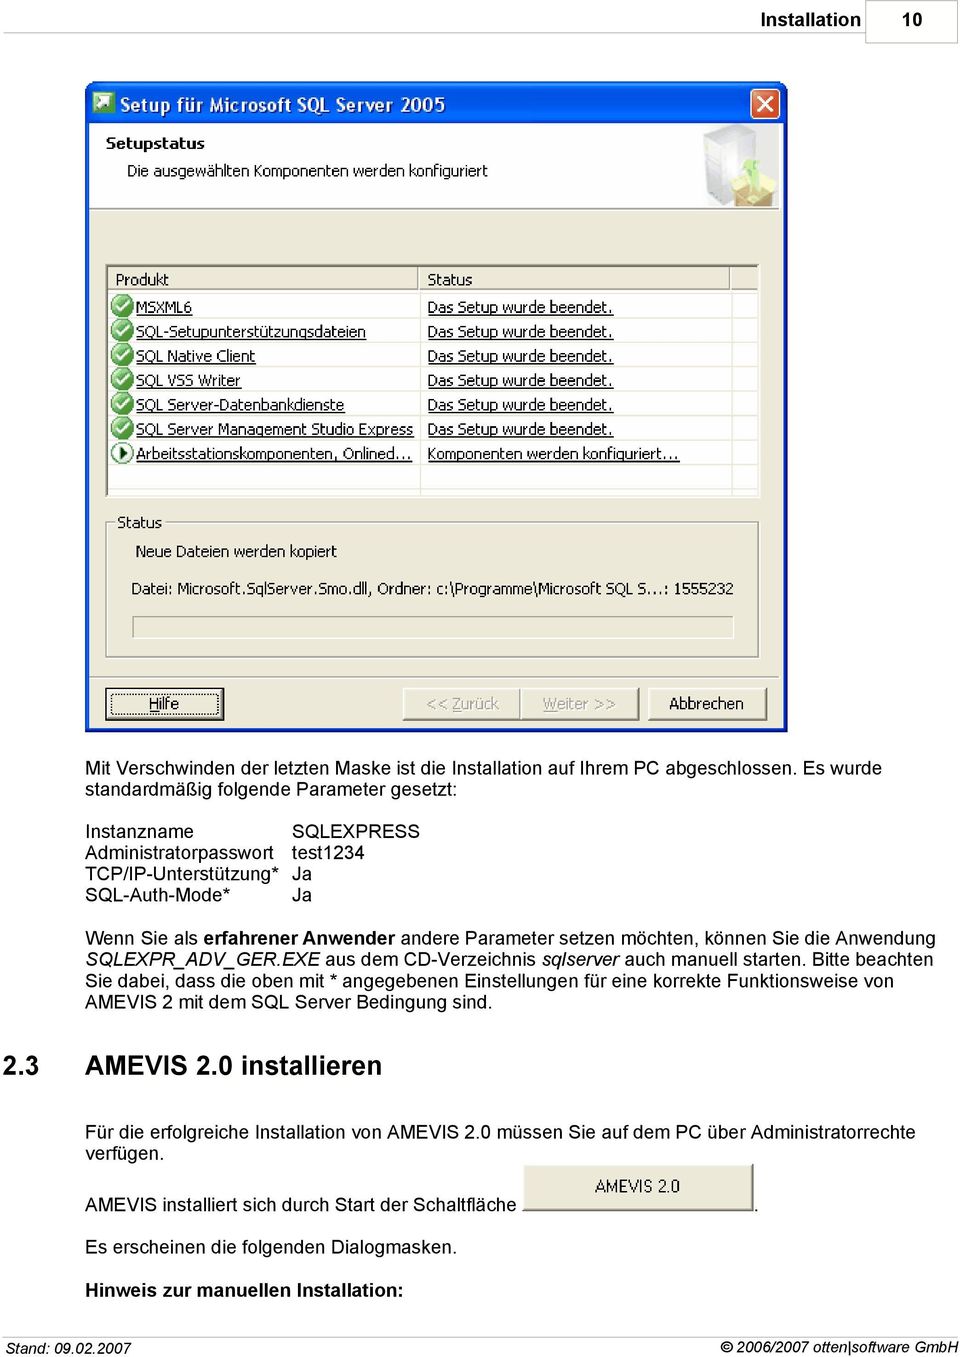 setzen möchten, können Sie die Anwendung SQLEXPR_ADV_GER.EXE aus dem CD-Verzeichnis sqlserver auch manuell starten.